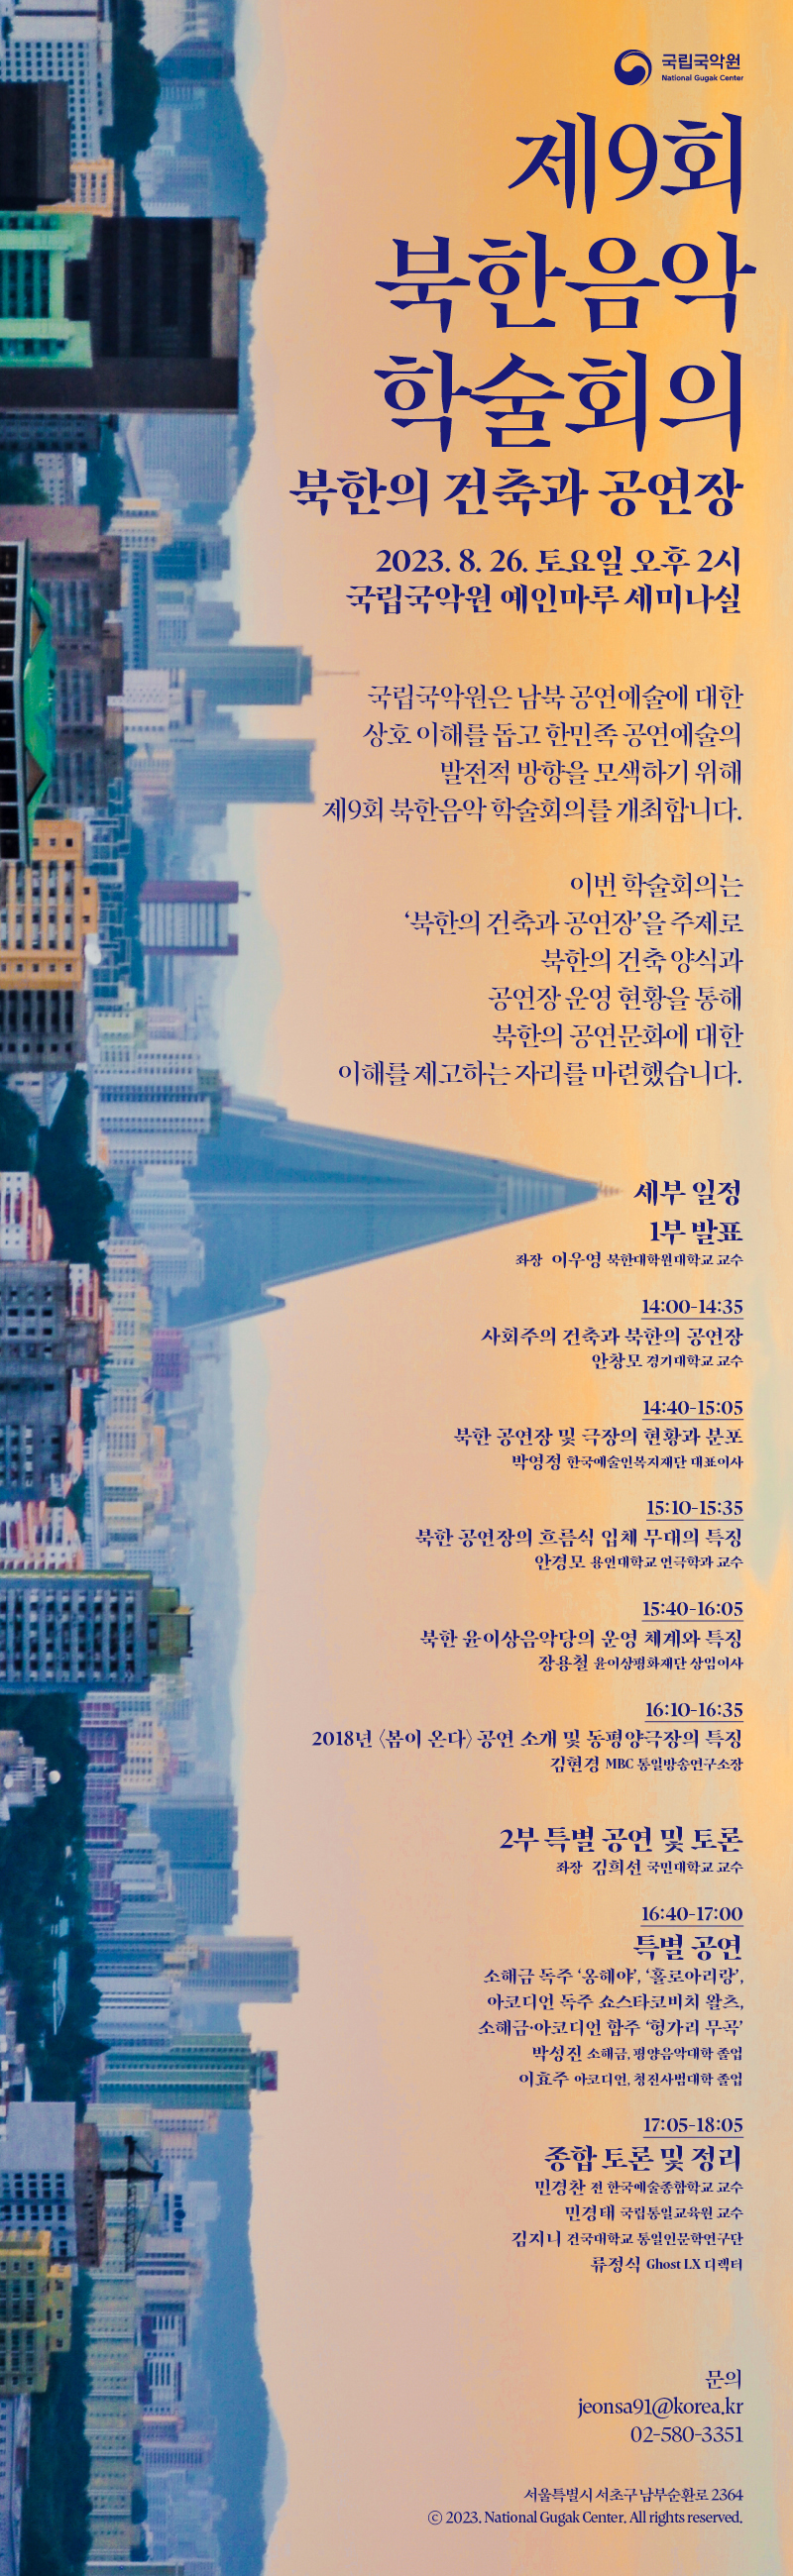 <제9회 북한음악학술회의: 북한의 건축과 공연장>  국립국악원은 남북공연예술에 대한 상호이해를 돕고 한민족 공연예술의 발전적 방향을 모색하기 위해 제9회 북한음악 학술회의를 개최합니다.  이번 학술회의는 ‘북한의 건축과 공연장’을 주제로 북한의 건축양식과 공연장 운영현황을 통해 북한의 공연문화에 대한 이해를 제고하는 자리를 마련하였습니다.   □ 일시/장소: 2023.8.26.(토) 오후 2시 / 국립국악원 예인마루 세미나실  □ 세부일정  ㅇ 1부 발표(14:00-16:35): 좌장 이우영(북한대학원대학교 교수)    - 사회주의 건축과 북한의 공연장: 안창모(경기대학교 교수)    - 북한 공연장 및 극장의 현황과 분포: 박영정(예술인복지재단 대표이사)     - 북한 공연장의 흐름식 입체 무대의 특징: 안경모(용인대 연극학과 교수)    - 북한 윤이상음악당의 운영 체계와 특징: 장용철(윤이상 평화재단 상임이사)    - 2018년‘봄이온다’공연 소개 및 동평양 극장 특징: 김현경(MBC통일방송      연구소장)   ㅇ 2부 특별공연 및 종합토론: 좌장 김희선(국민대학교 교수)   - <특별공연: 소해금: 박성진(평양음악대학졸),아코디언: 이효주(청진사범대학졸) >     ․ 소해금독주: 옹헤야, 홀로아리랑       ․ 아코디언 독주: 쇼스타코비치 왈츠    ․ 소해금, 아코디언 합주: 헝가리 무곡   - 종합토론 및 정리     <토론자>    ․ 민경찬(전, 한국예술종합학교 교수)    ․ 민경태(국립통일교육원 교수)    ․ 김지니(건국대 통일인문학 연구단)   ․ 류정식(Ghost LX 디렉터)  □ 문의: 국립국악원 국악연구실 02-580-3351